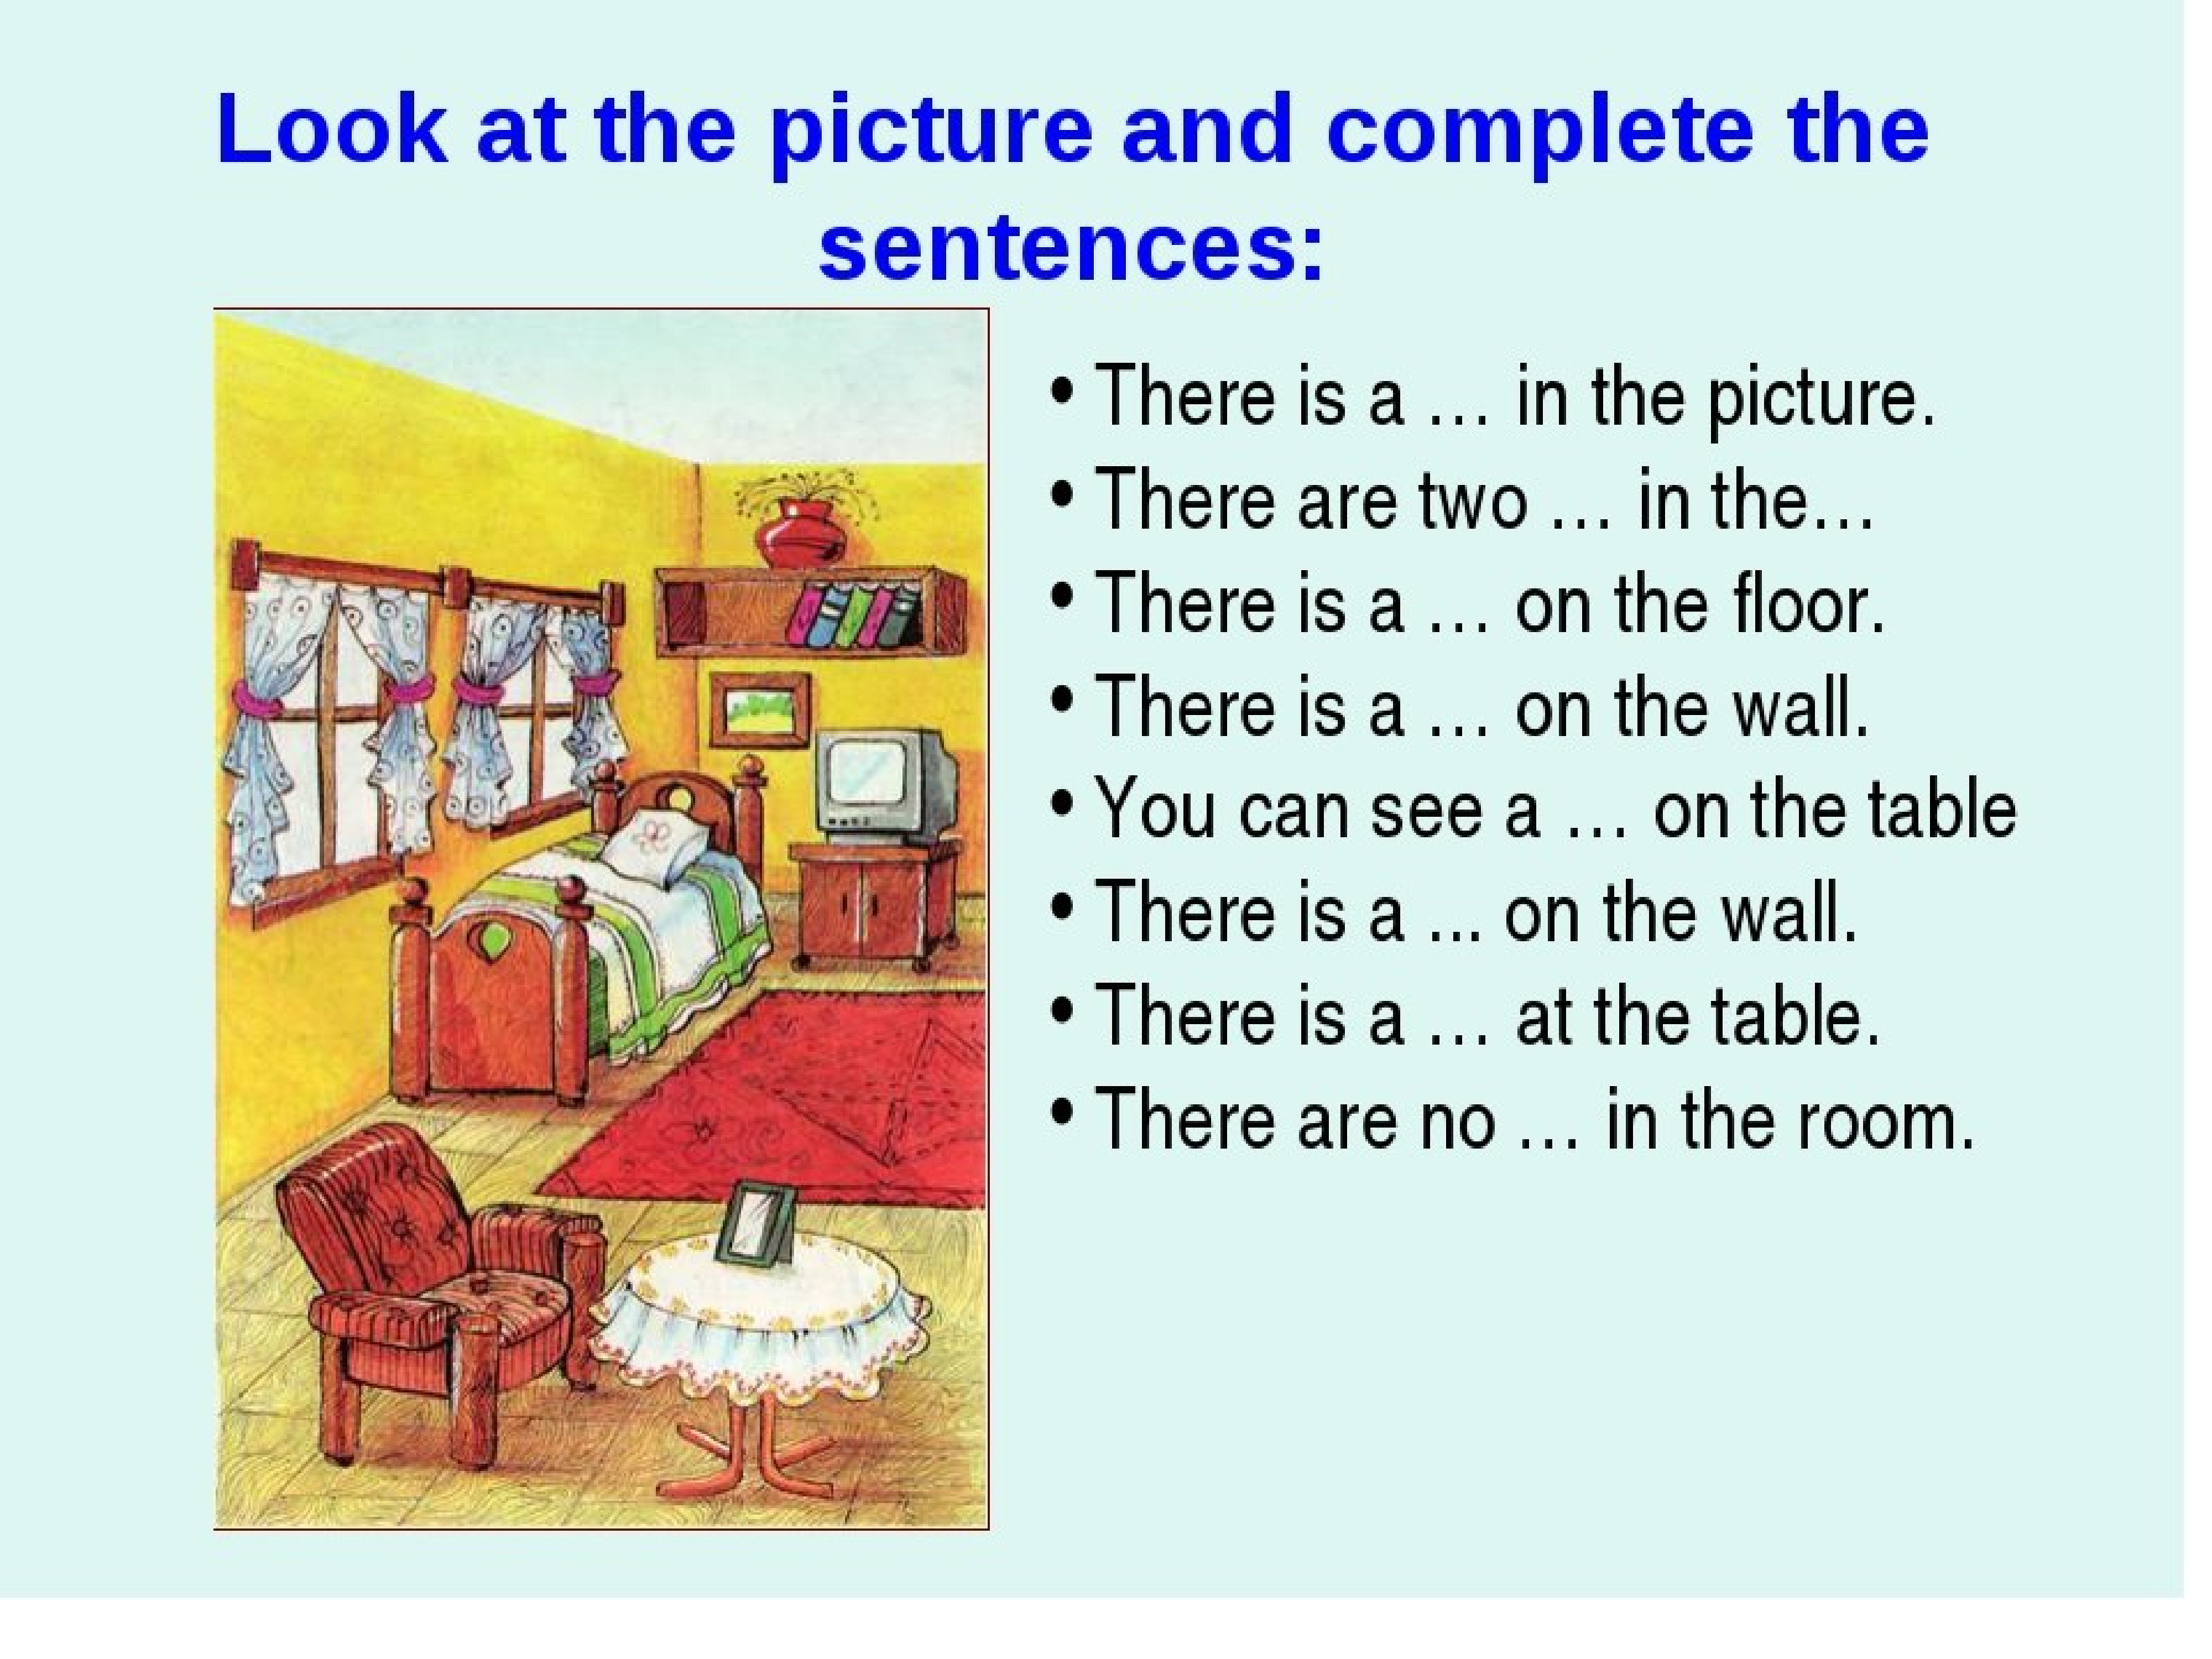 правила описания картинки на английском языке